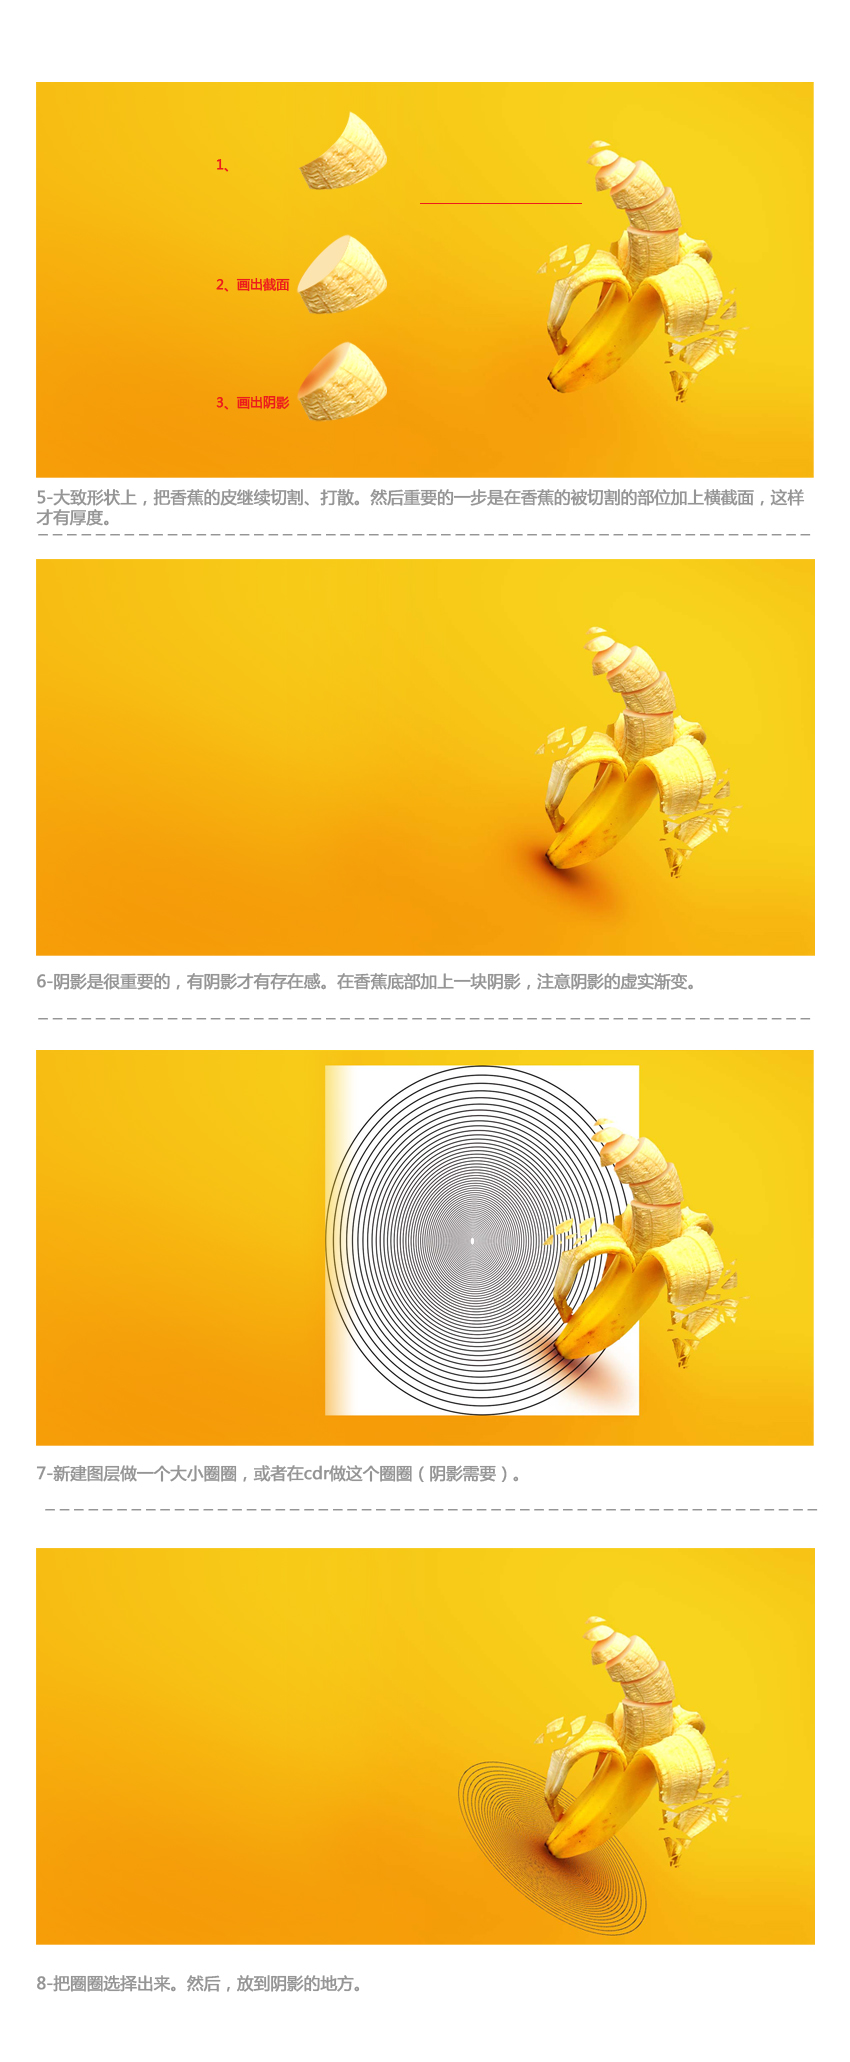 Photoshop制作动感时尚的香蕉派对海报